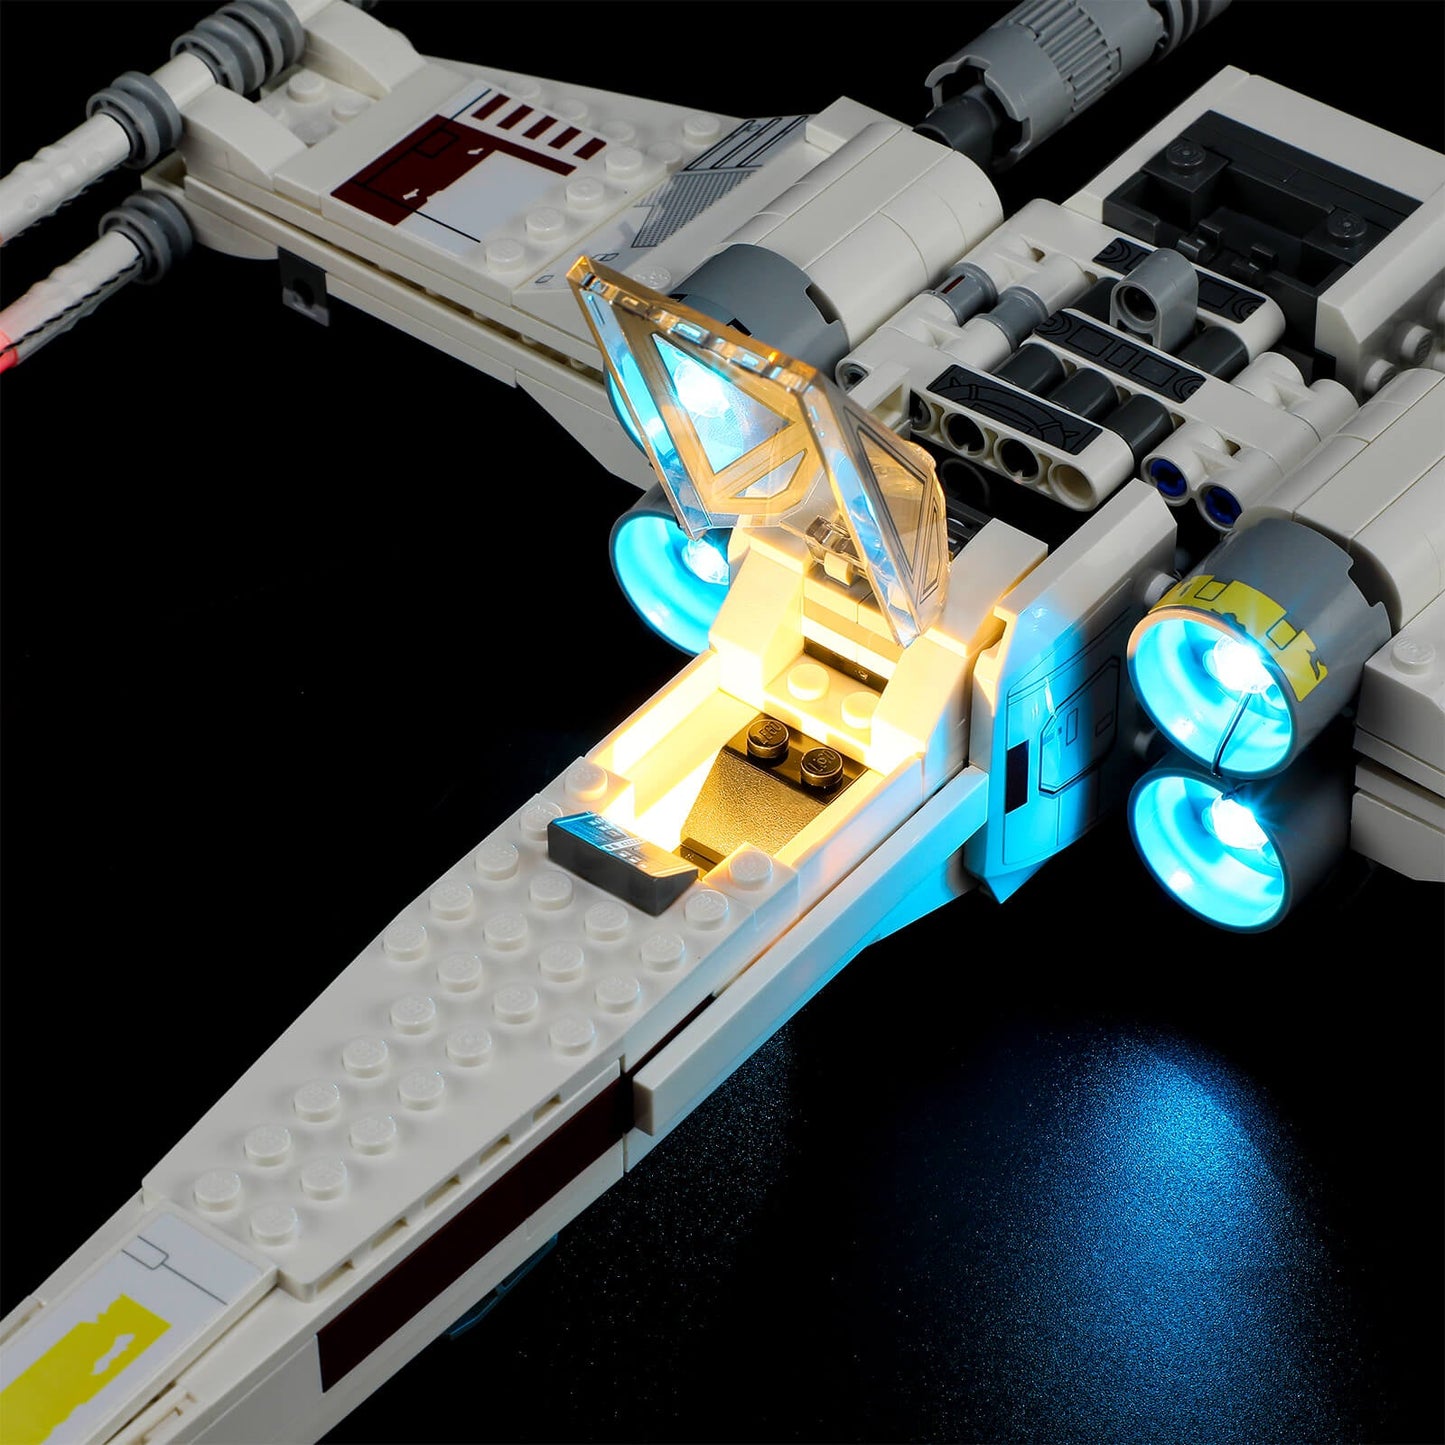 Luke Skywalker’s X-Wing Fighter 75301 cockpit